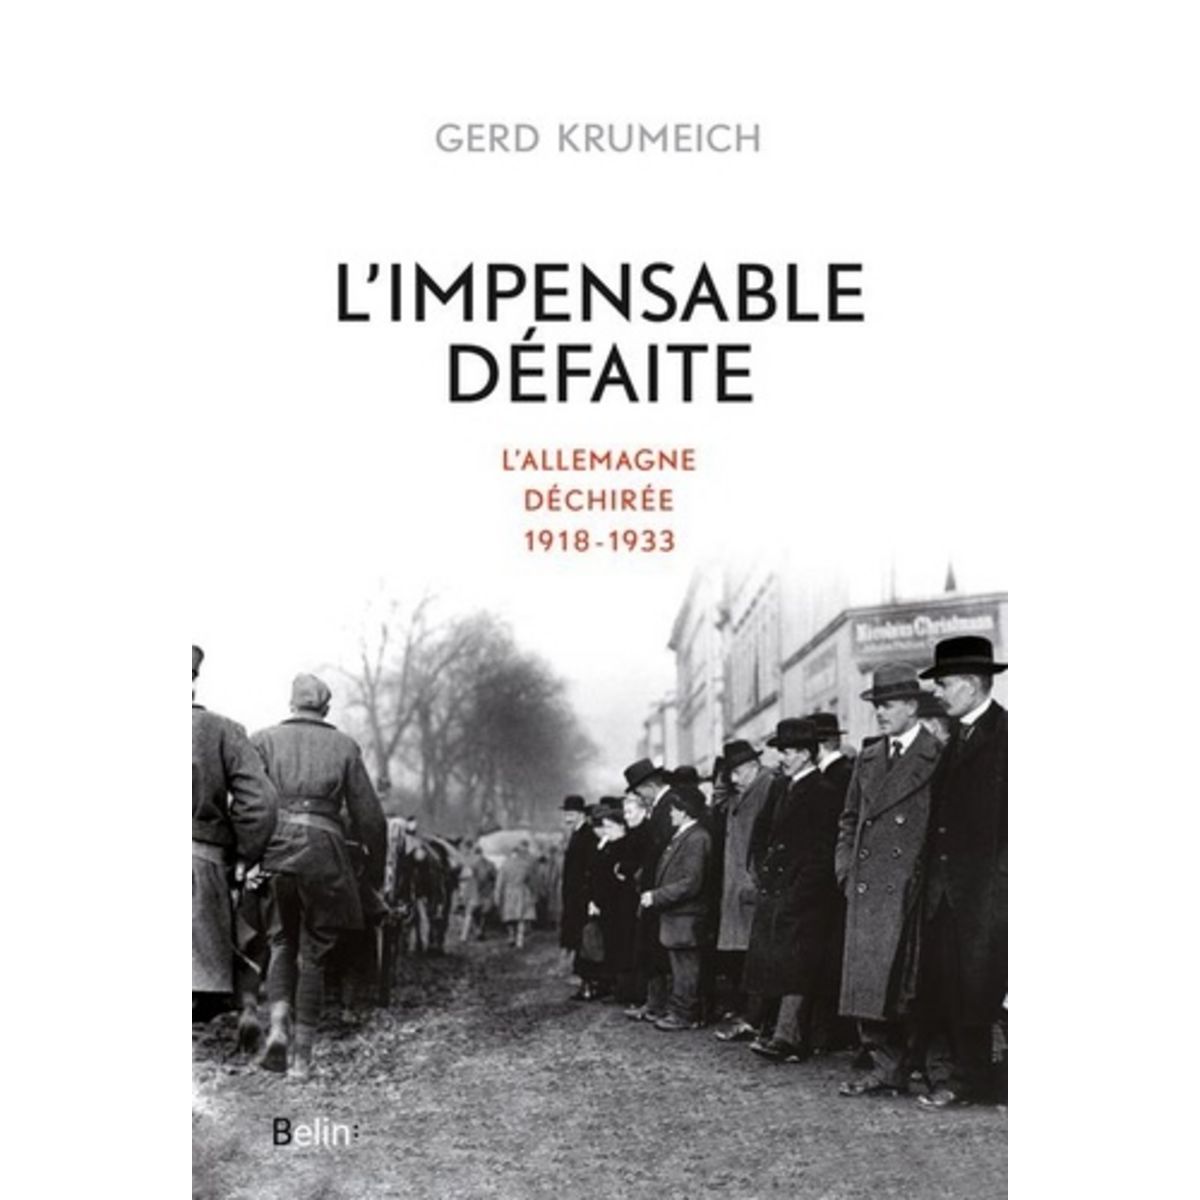  L'IMPENSABLE DEFAITE. L'ALLEMAGNE DECHIREE, 1918-1933, Krumeich Gerd